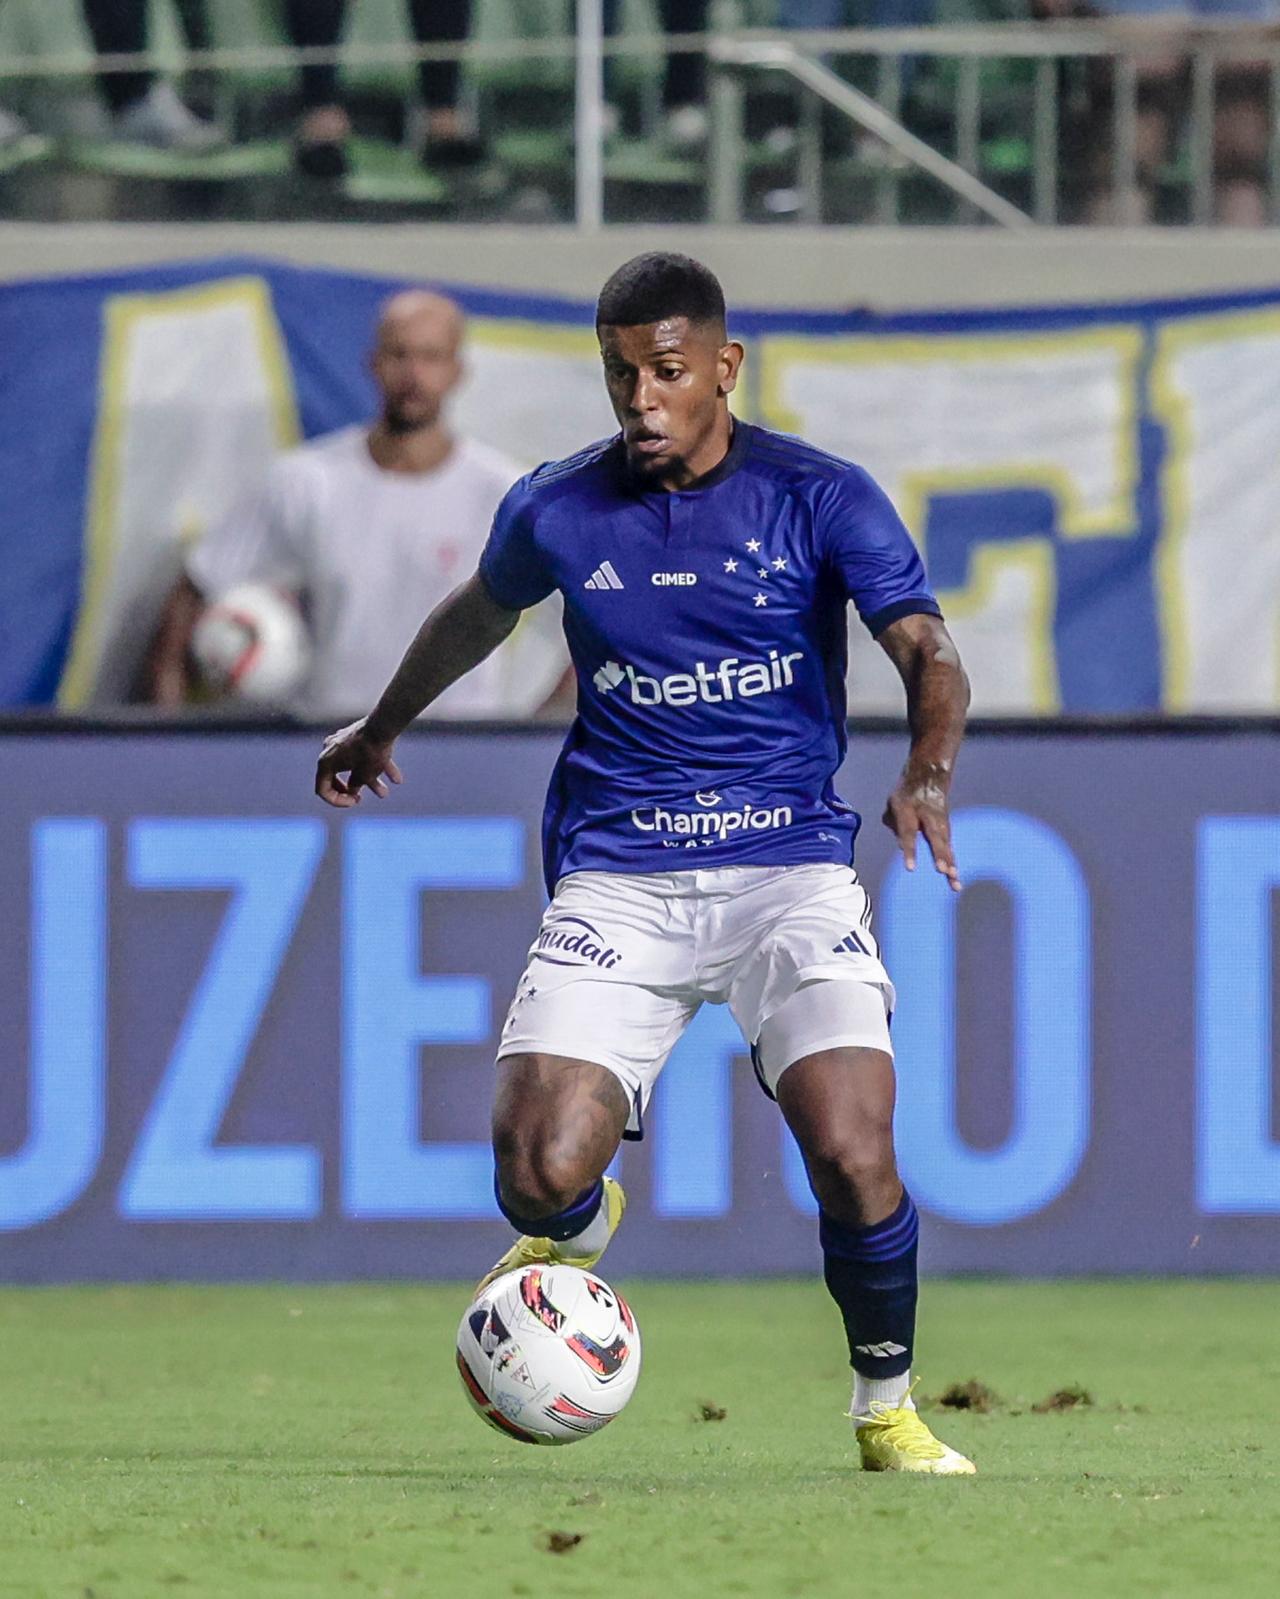 Cruzeiro confirma lesão grave no joelho de Wesley Gasolina, que